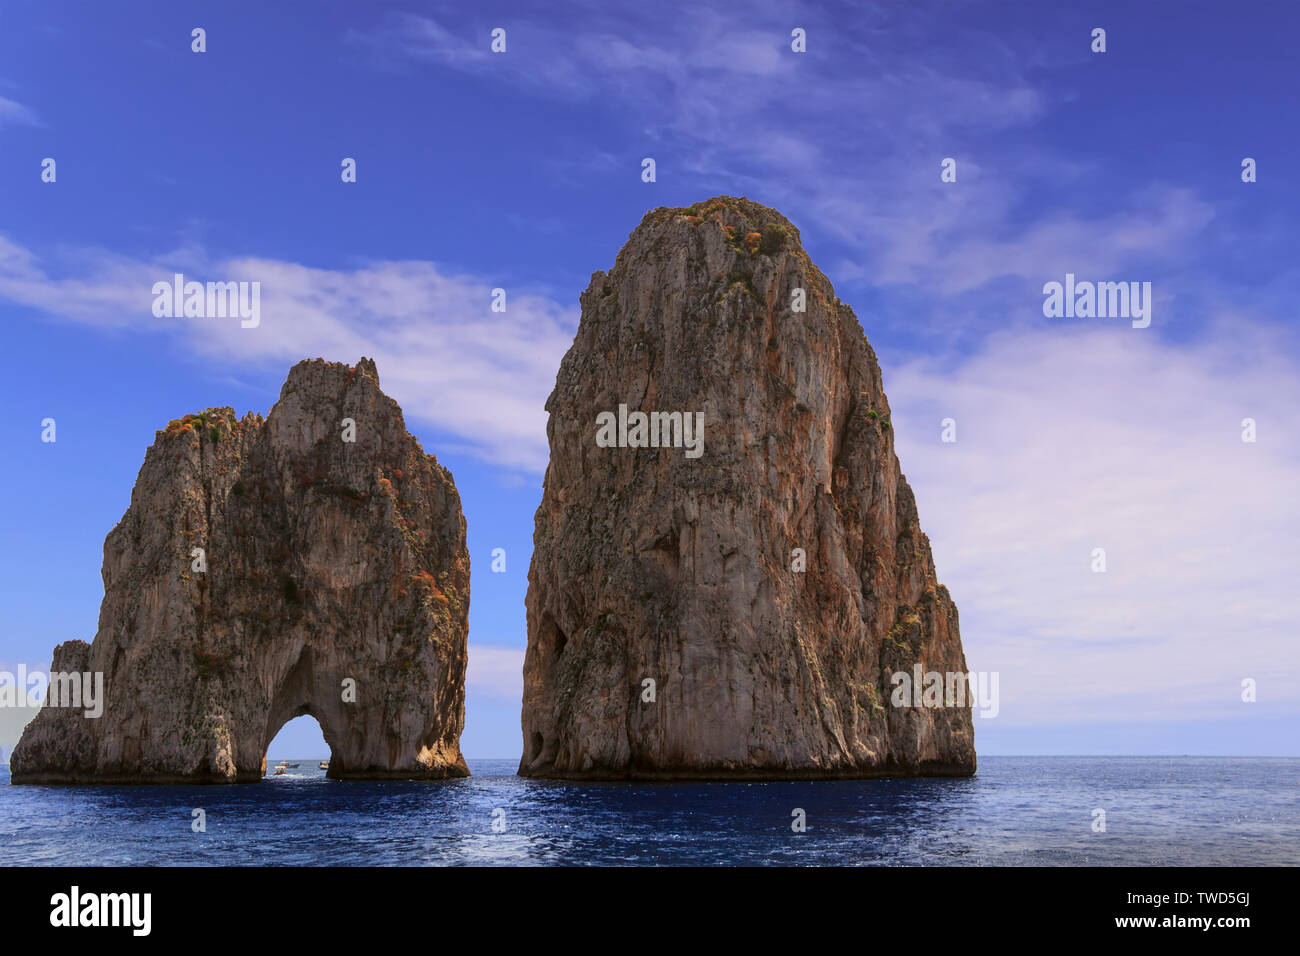 Los farallones de rocas en la costa de la isla de Capri, Italia. Pilas de Capri, el símbolo de la isla, situada en el golfo de Nápoles, Campania. Foto de stock